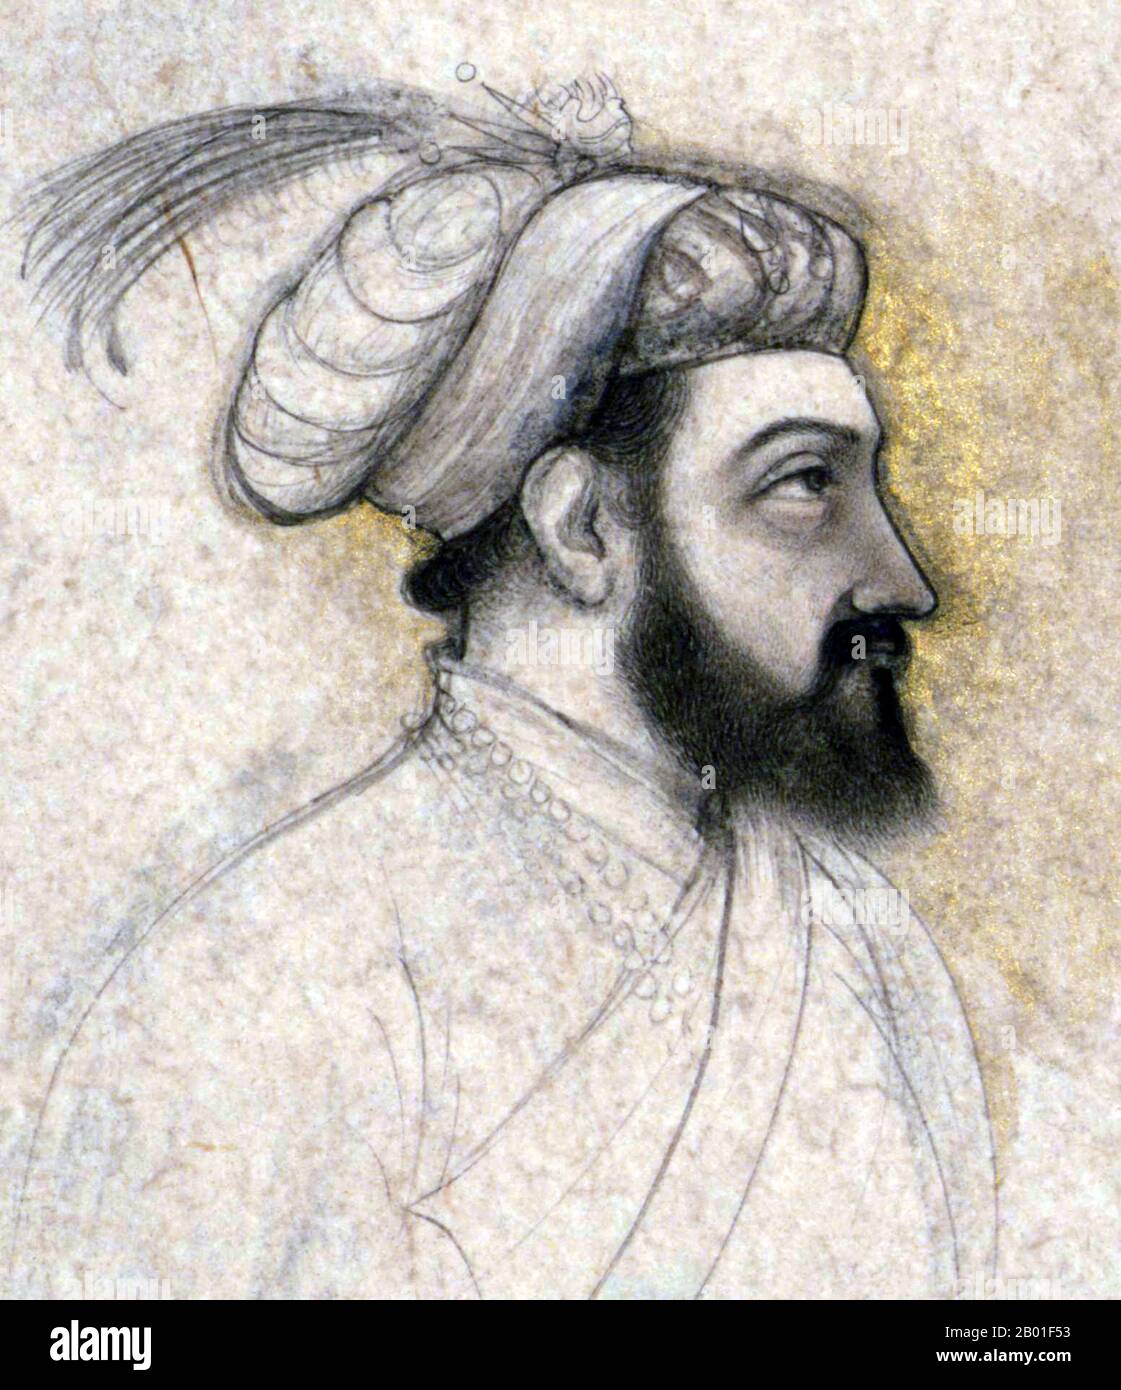 Inde: Portrait de l'empereur moghol Shah Jahan (5 janvier 1592 - 22 janvier 1666) par un artiste indien inconnu, mi-17th siècle. Shah Jahan fut l'empereur de l'Empire moghol dans le sous-continent indien de 1628 à 1658. Le nom Shah Jahan vient du persan signifiant « Roi du monde ». Il fut le cinquième empereur moghol après Babur, Humayun, Akbar et Jahangir. La période de son règne a été l'âge d'or de l'architecture de Mughal. Shahanshah Shah Jahan a érigé de nombreux monuments splendides, dont le plus célèbre est le légendaire Taj Mahal à Agra construit comme tombeau pour sa femme, l'impératrice Mumtaz Mahal Banque D'Images